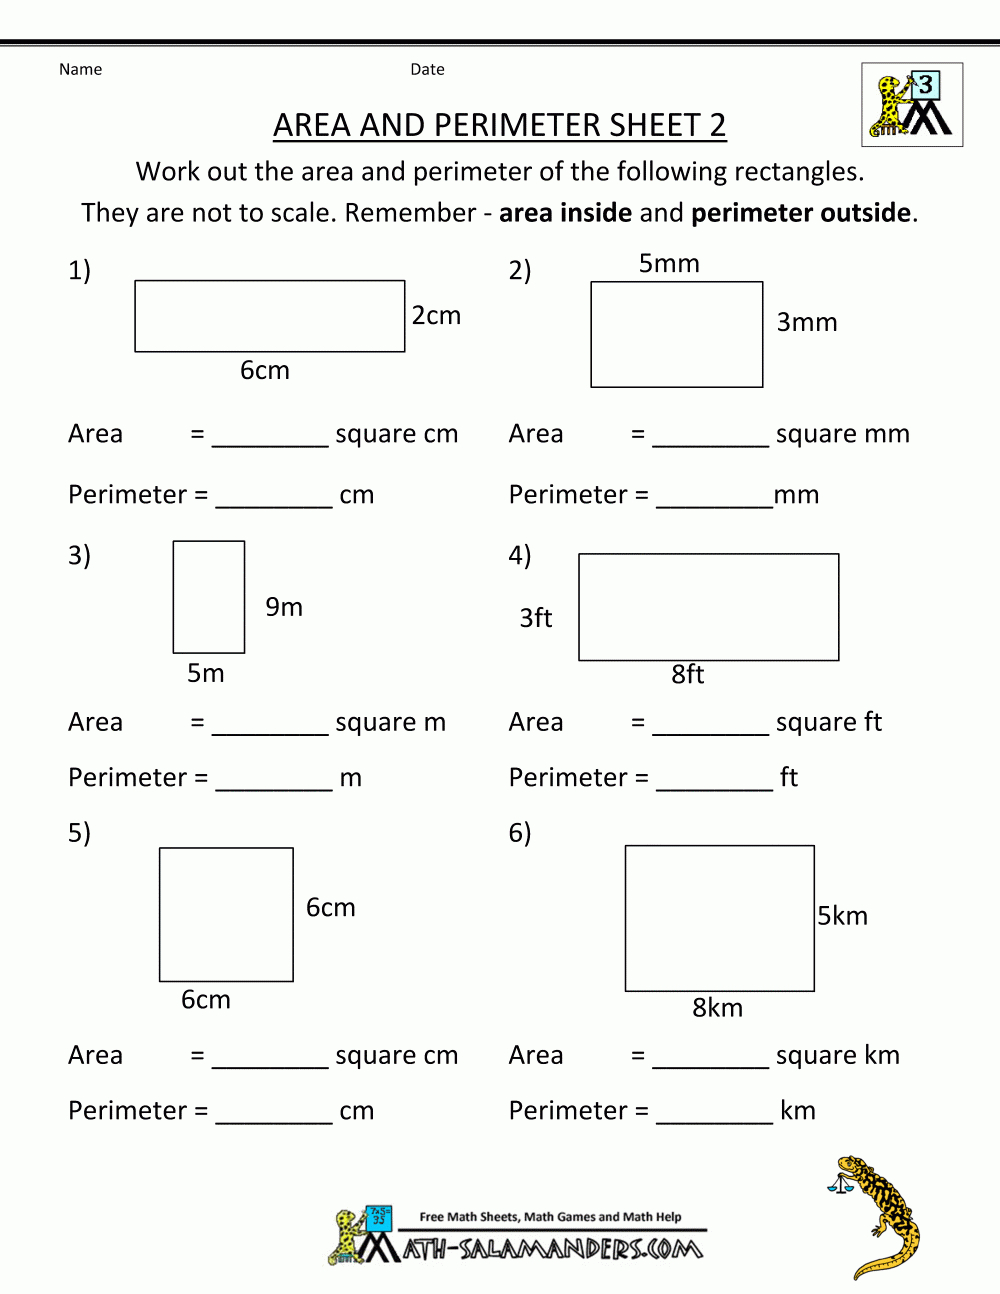 Free Printable Math Worksheets Area Perimeter 2 | Math | Pinterest - Free Printable Math Worksheets